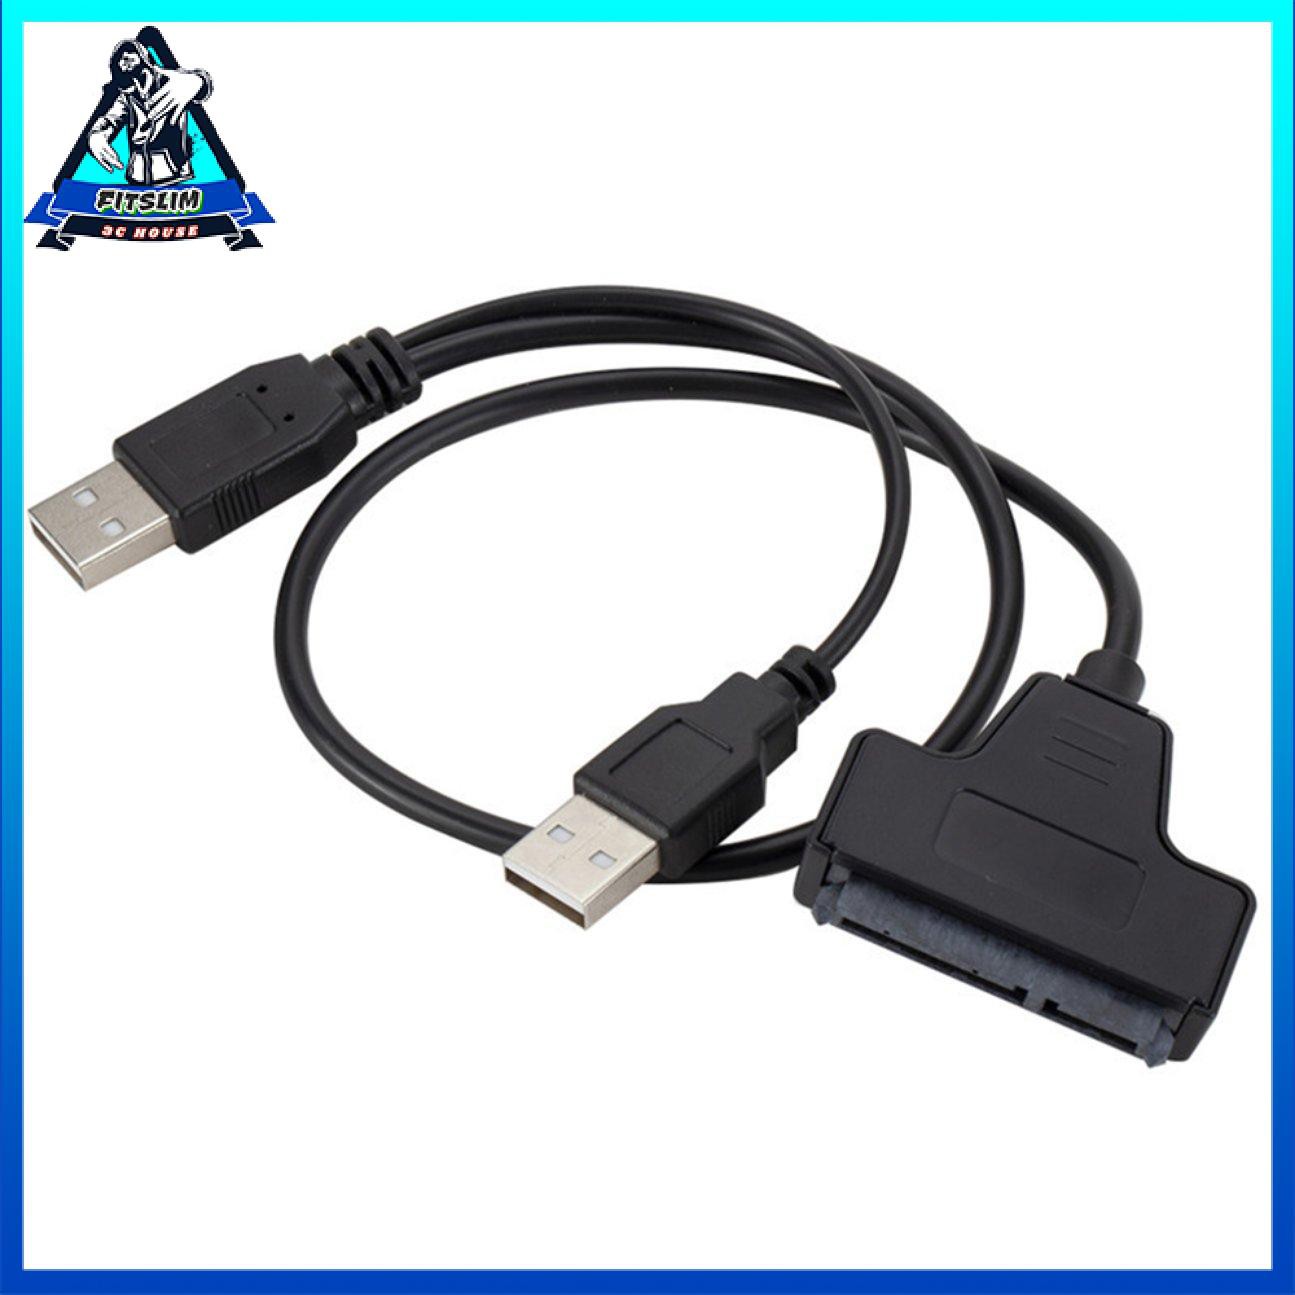 Cáp chuyển đổi USB 2.0 SATA 7 + 15Pin sang USB 2.0 cho ổ cứng máy tính xách tay 2.5 HDD